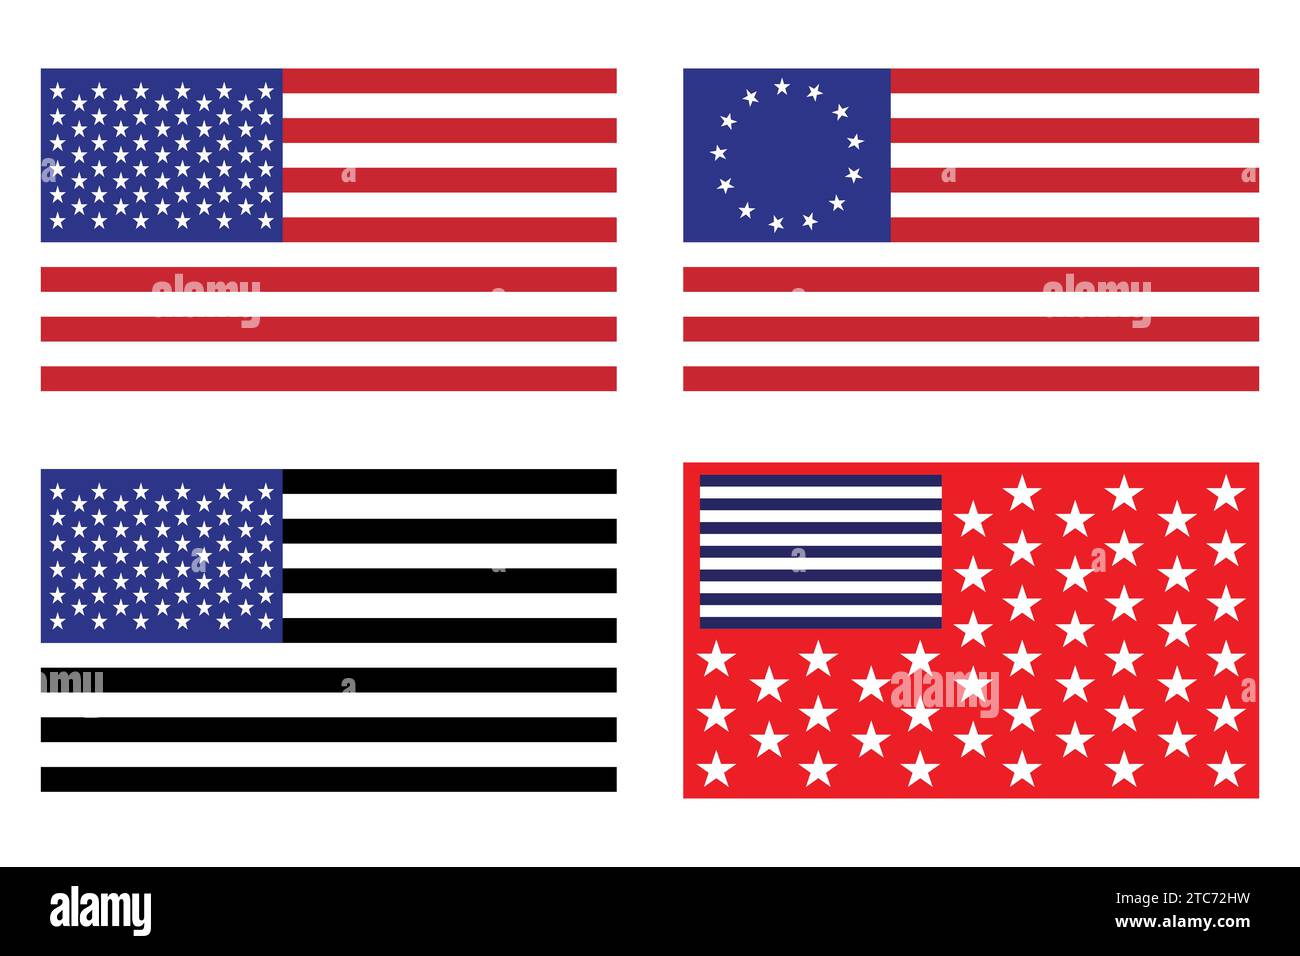 Flagge der Vereinigten Staaten von Amerika, amerikanische Flagge Fotos Vektor-Illustration. Stock Vektor